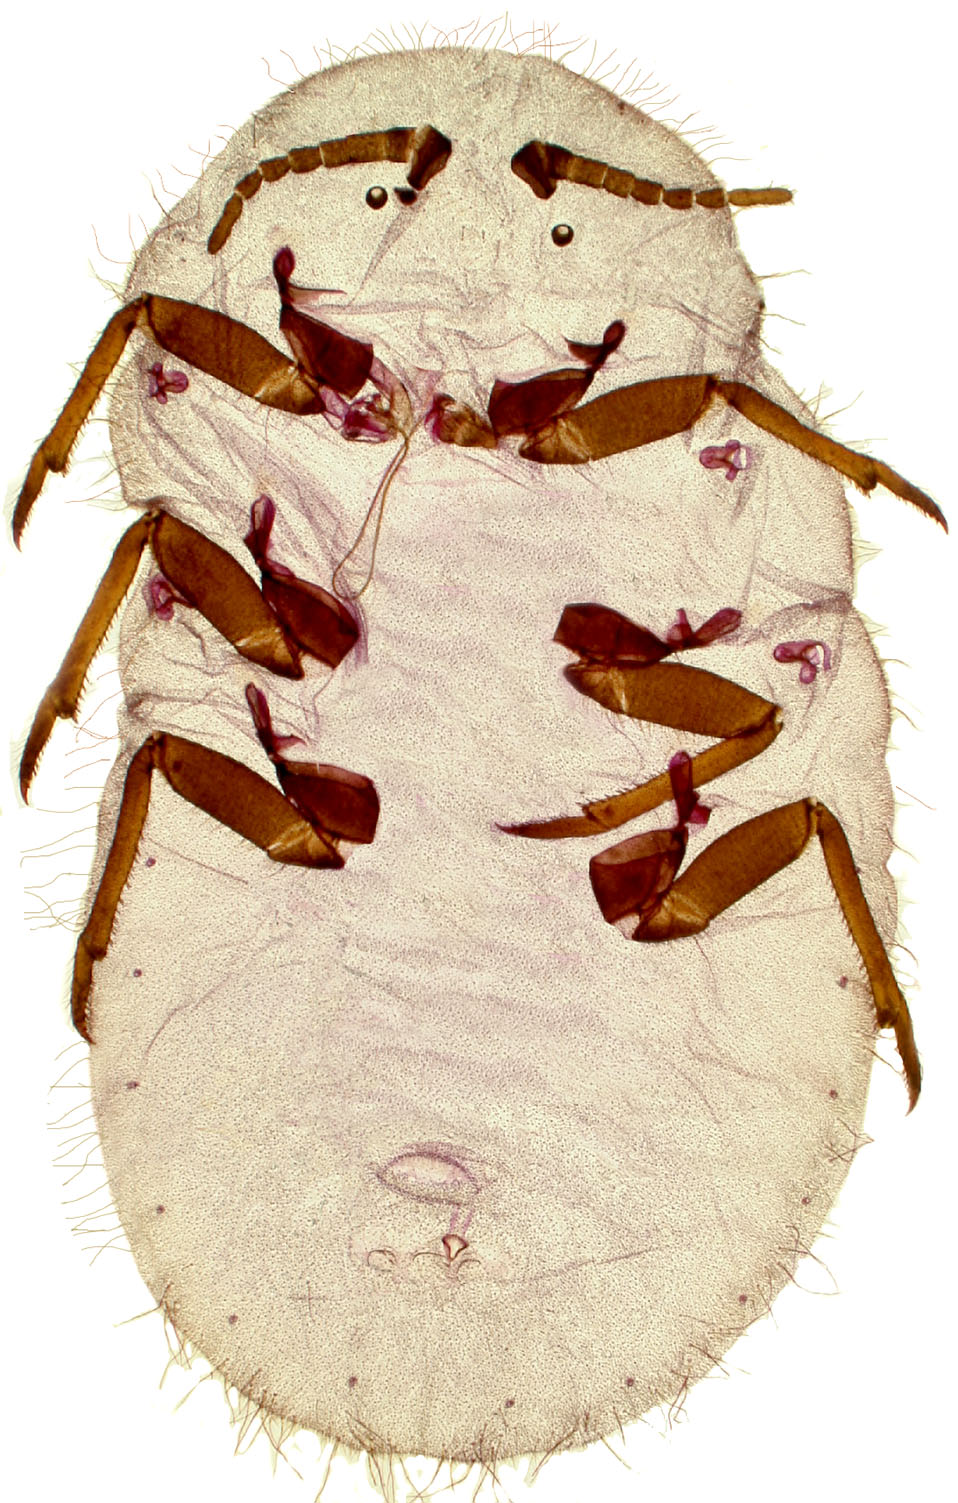  Monophlebidae:  Drosicha mangiferae  